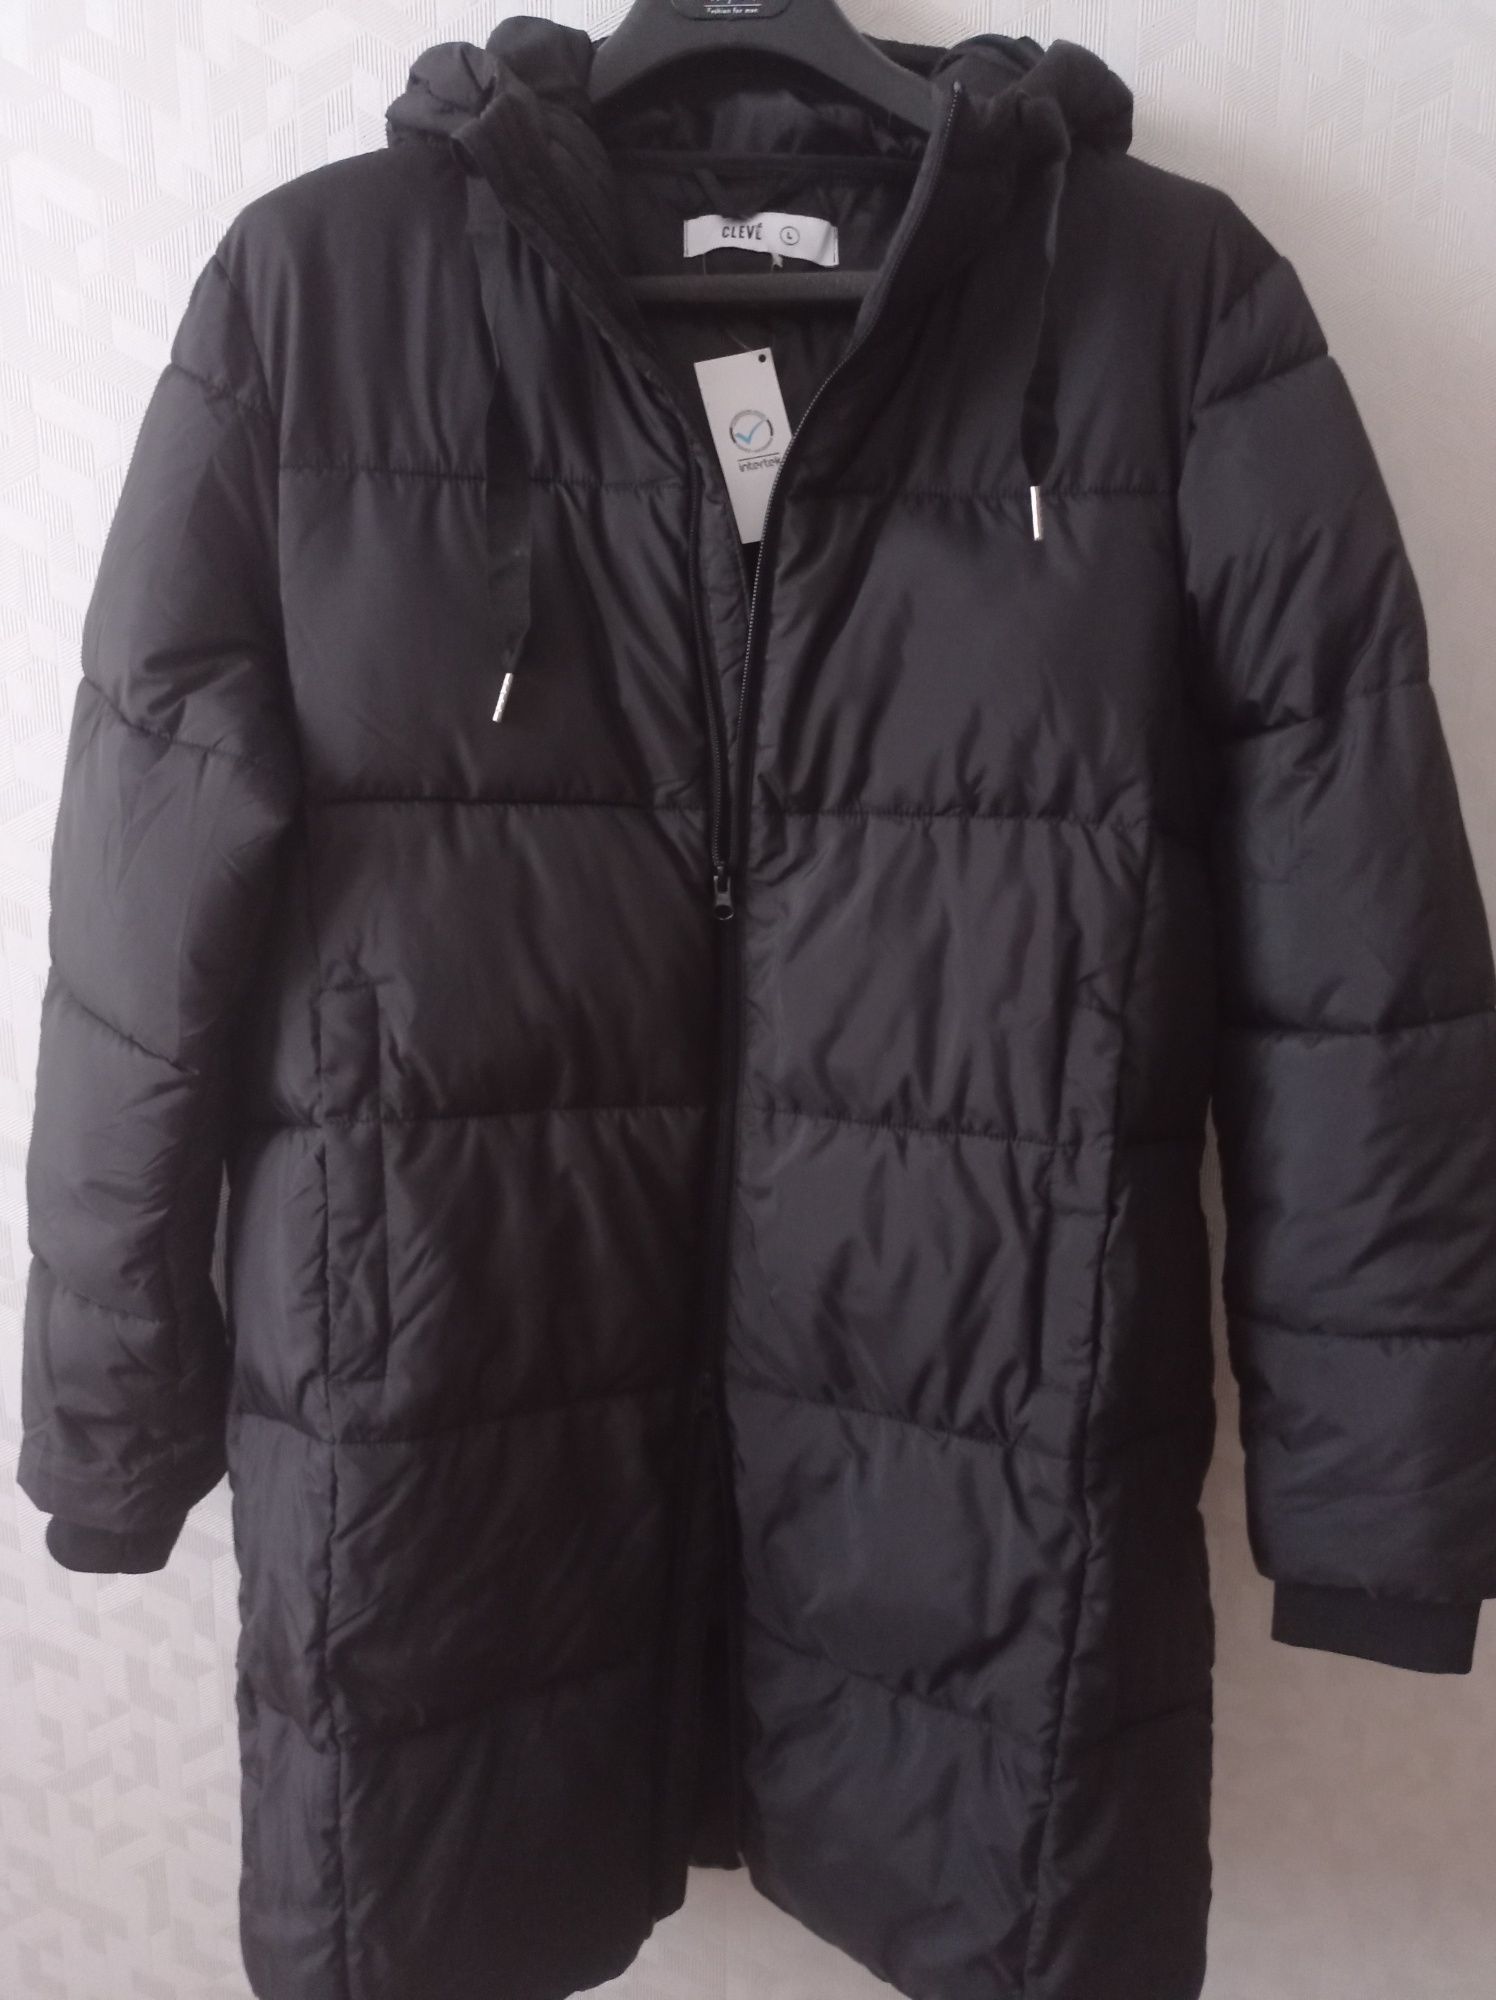 Nowy czarny płaszcz zimowy rozmiar L/XL